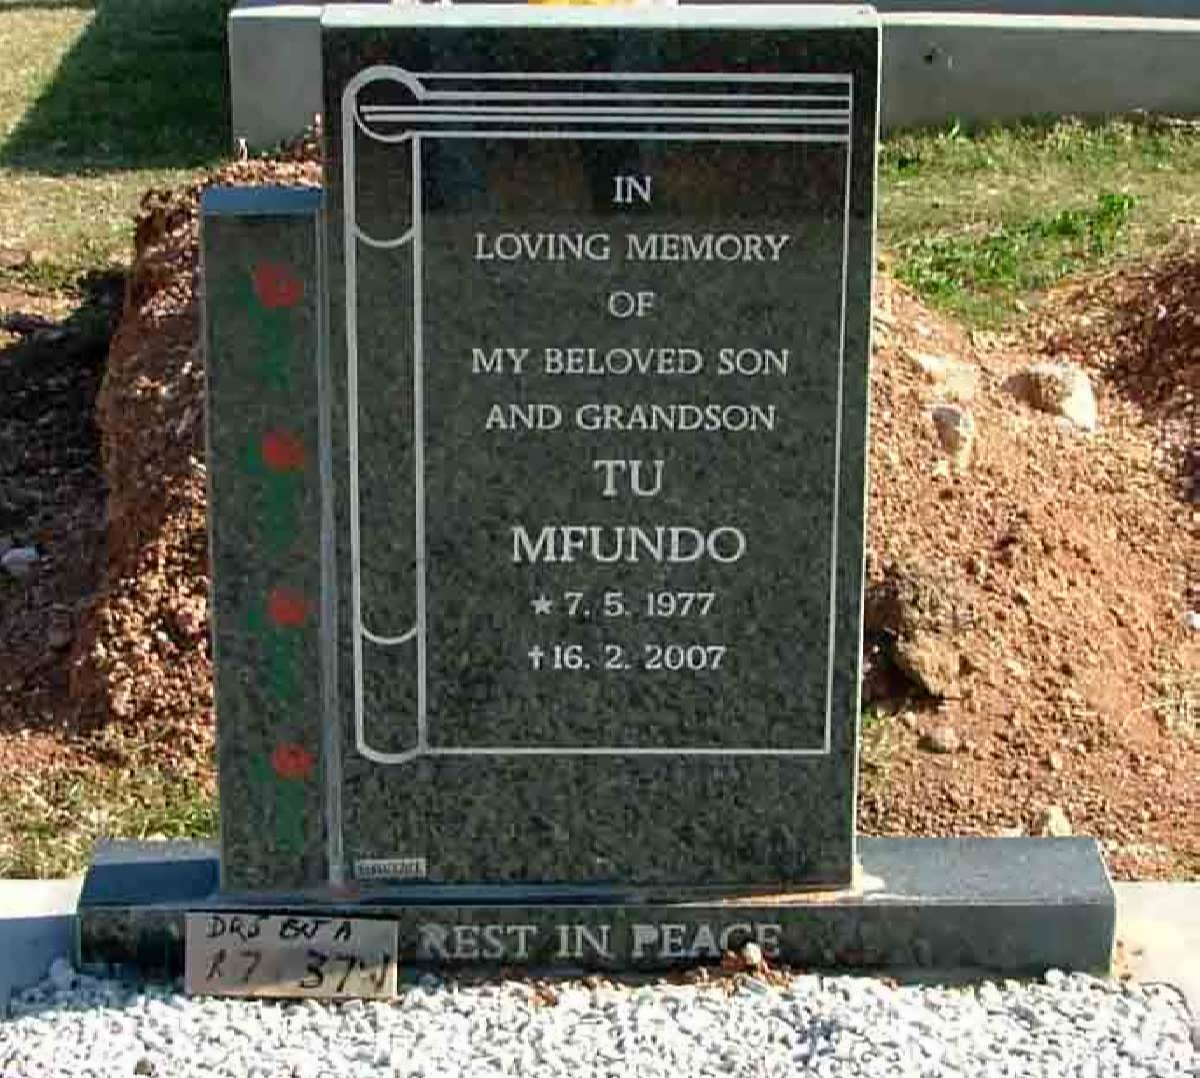 TU Mfundo 1977-2007